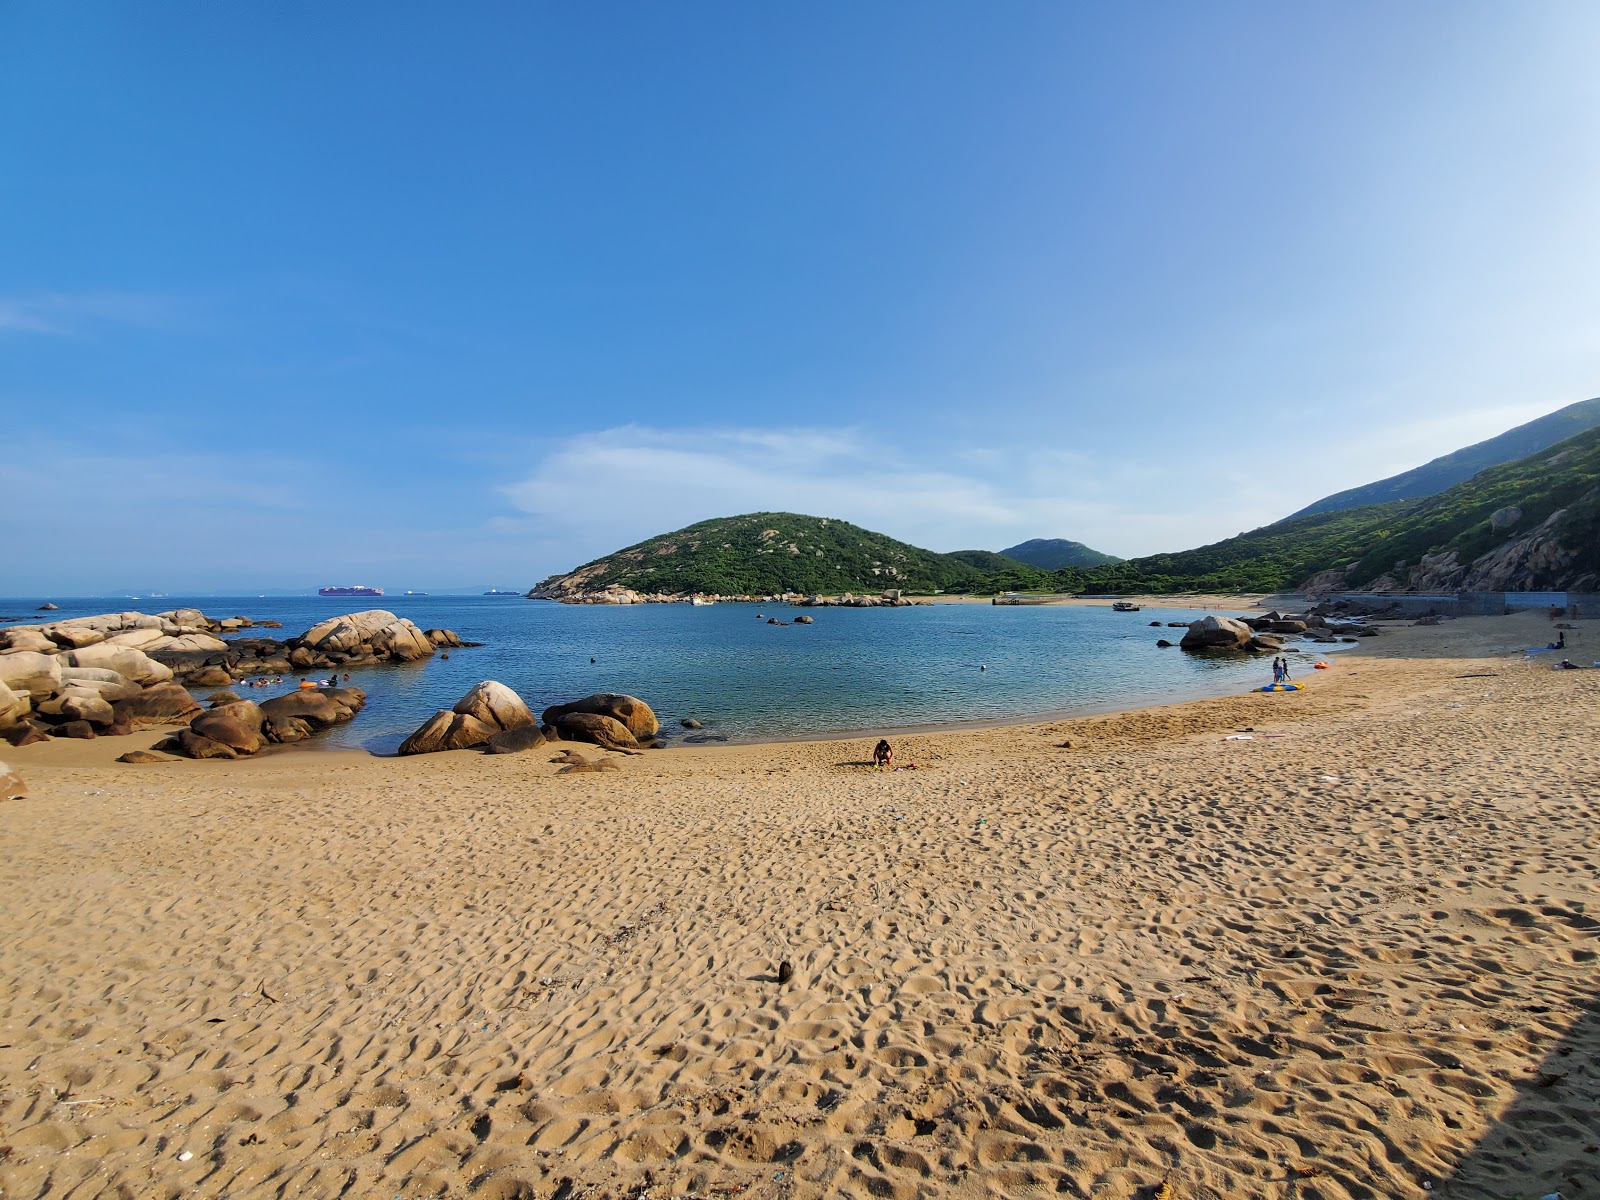 Photo de Yung Shue Ha Beach situé dans une zone naturelle